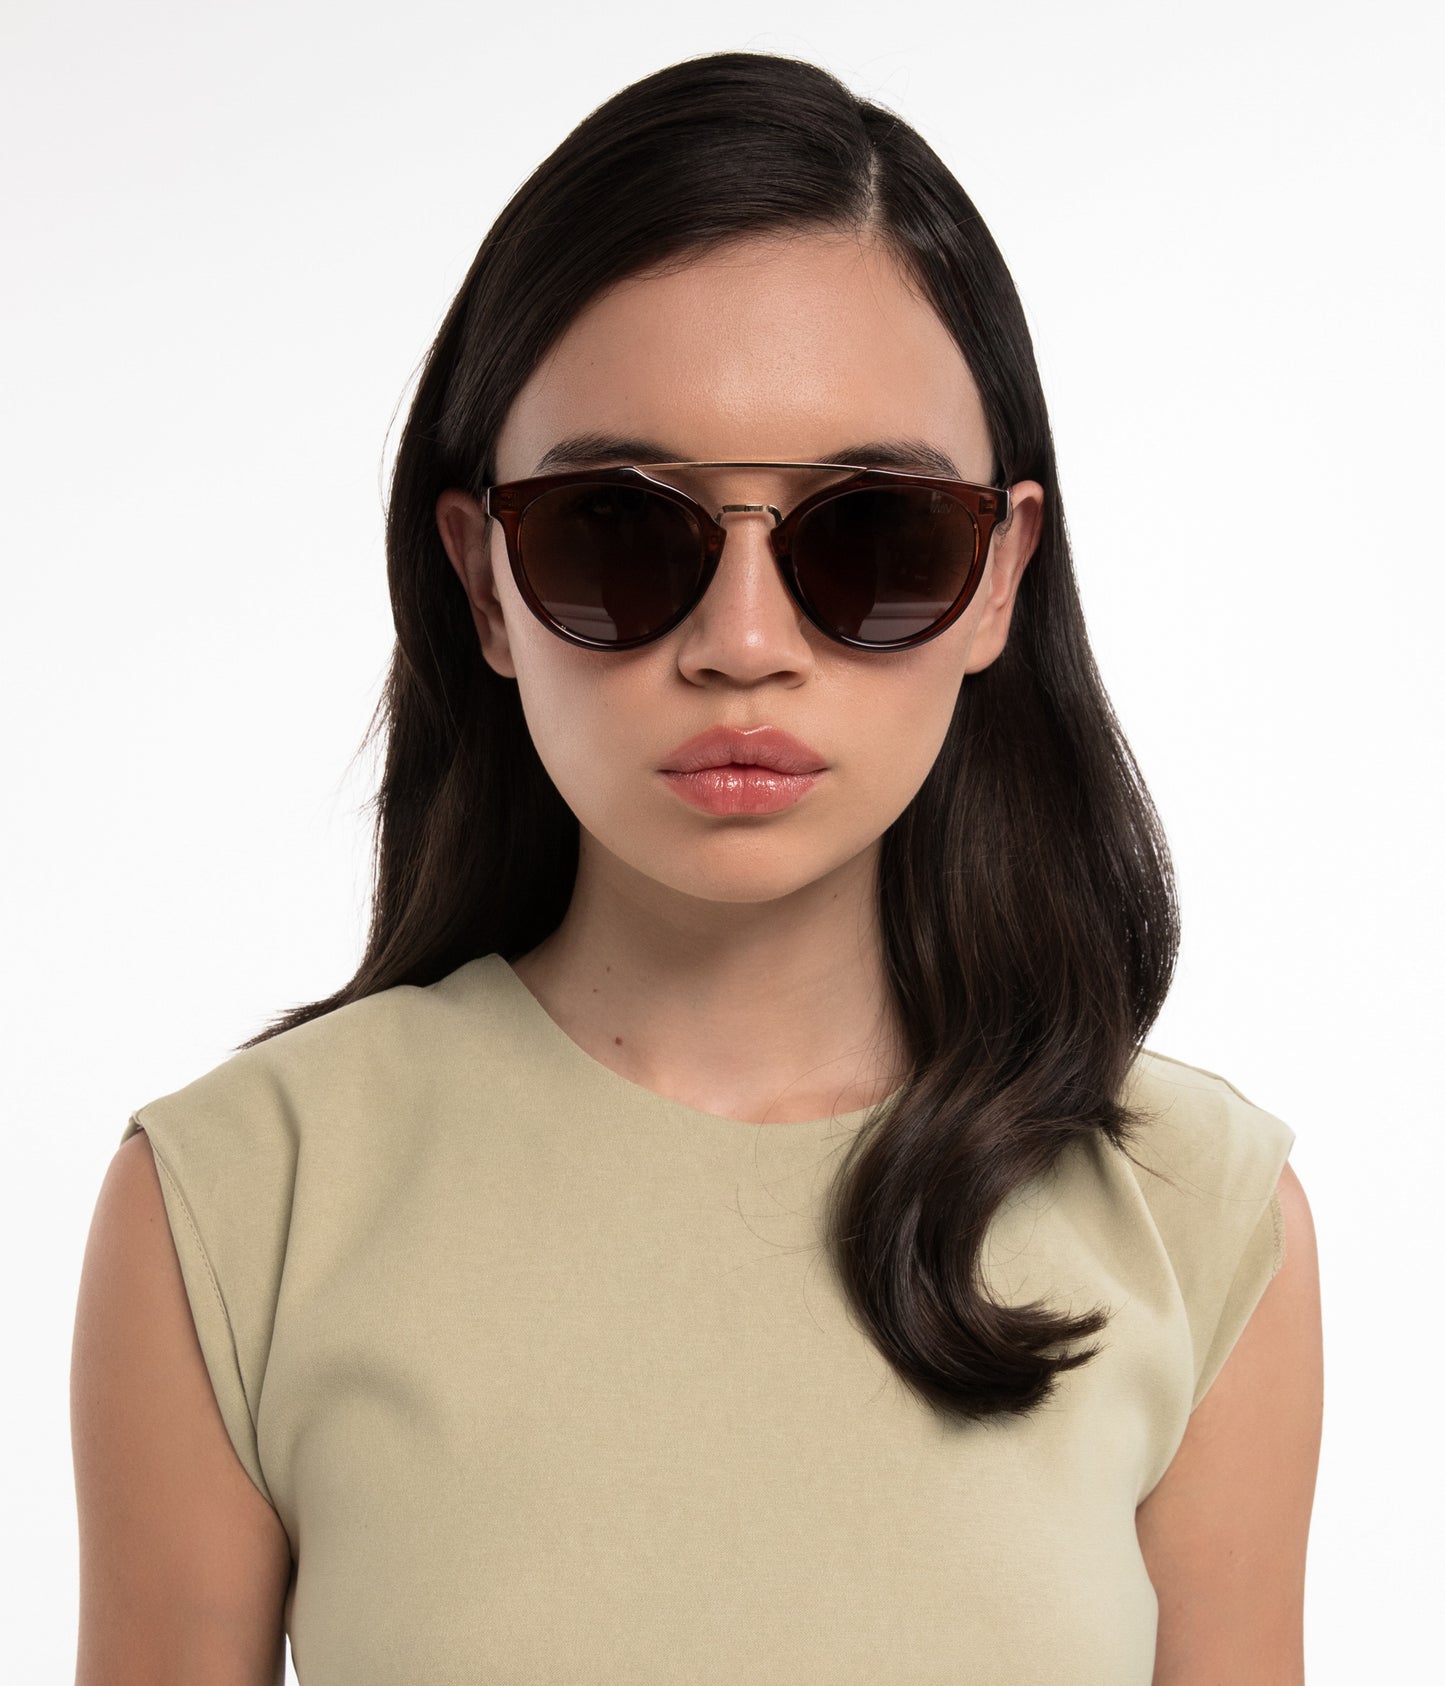 variant:: brun -- aldie2 sunglasses brun